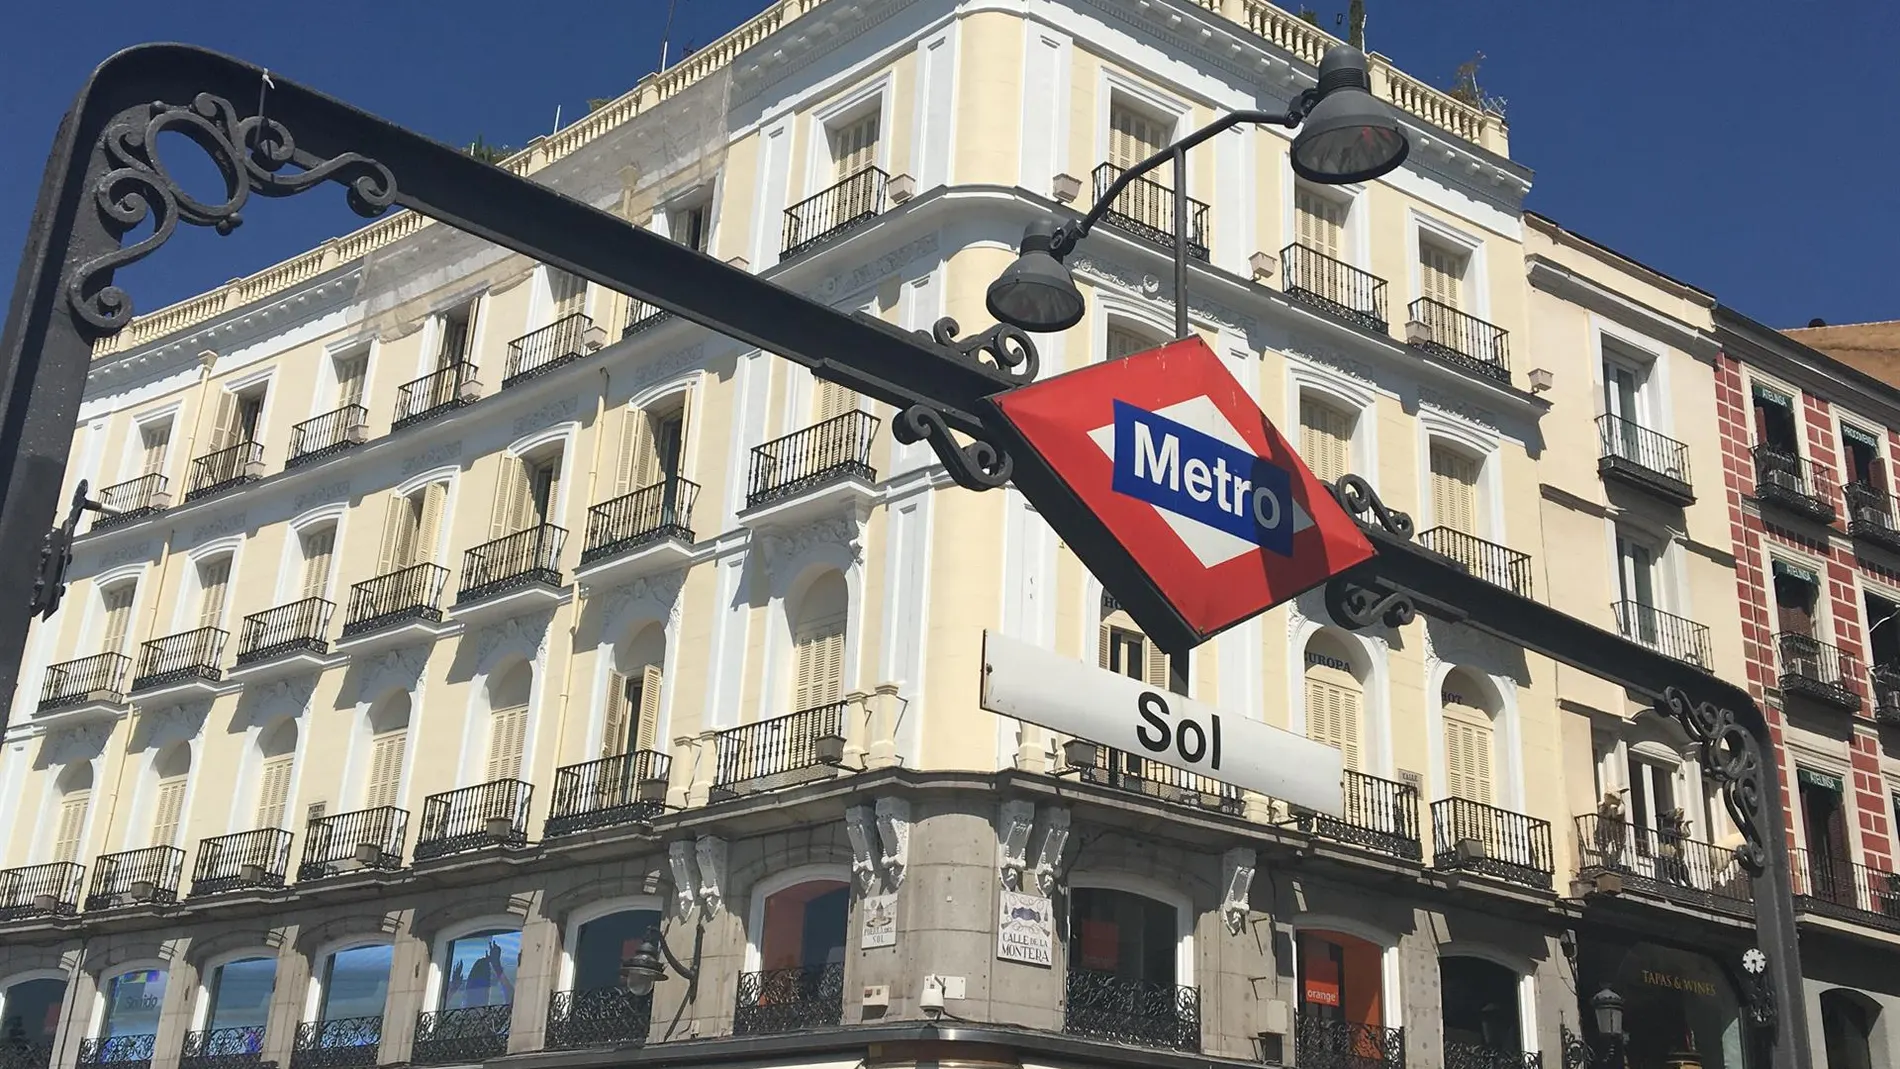 MADRID.-Cierres parciales de la estación de Sol de Metro y Cercanías de miércoles a sábado por las procesiones de Semana Santa